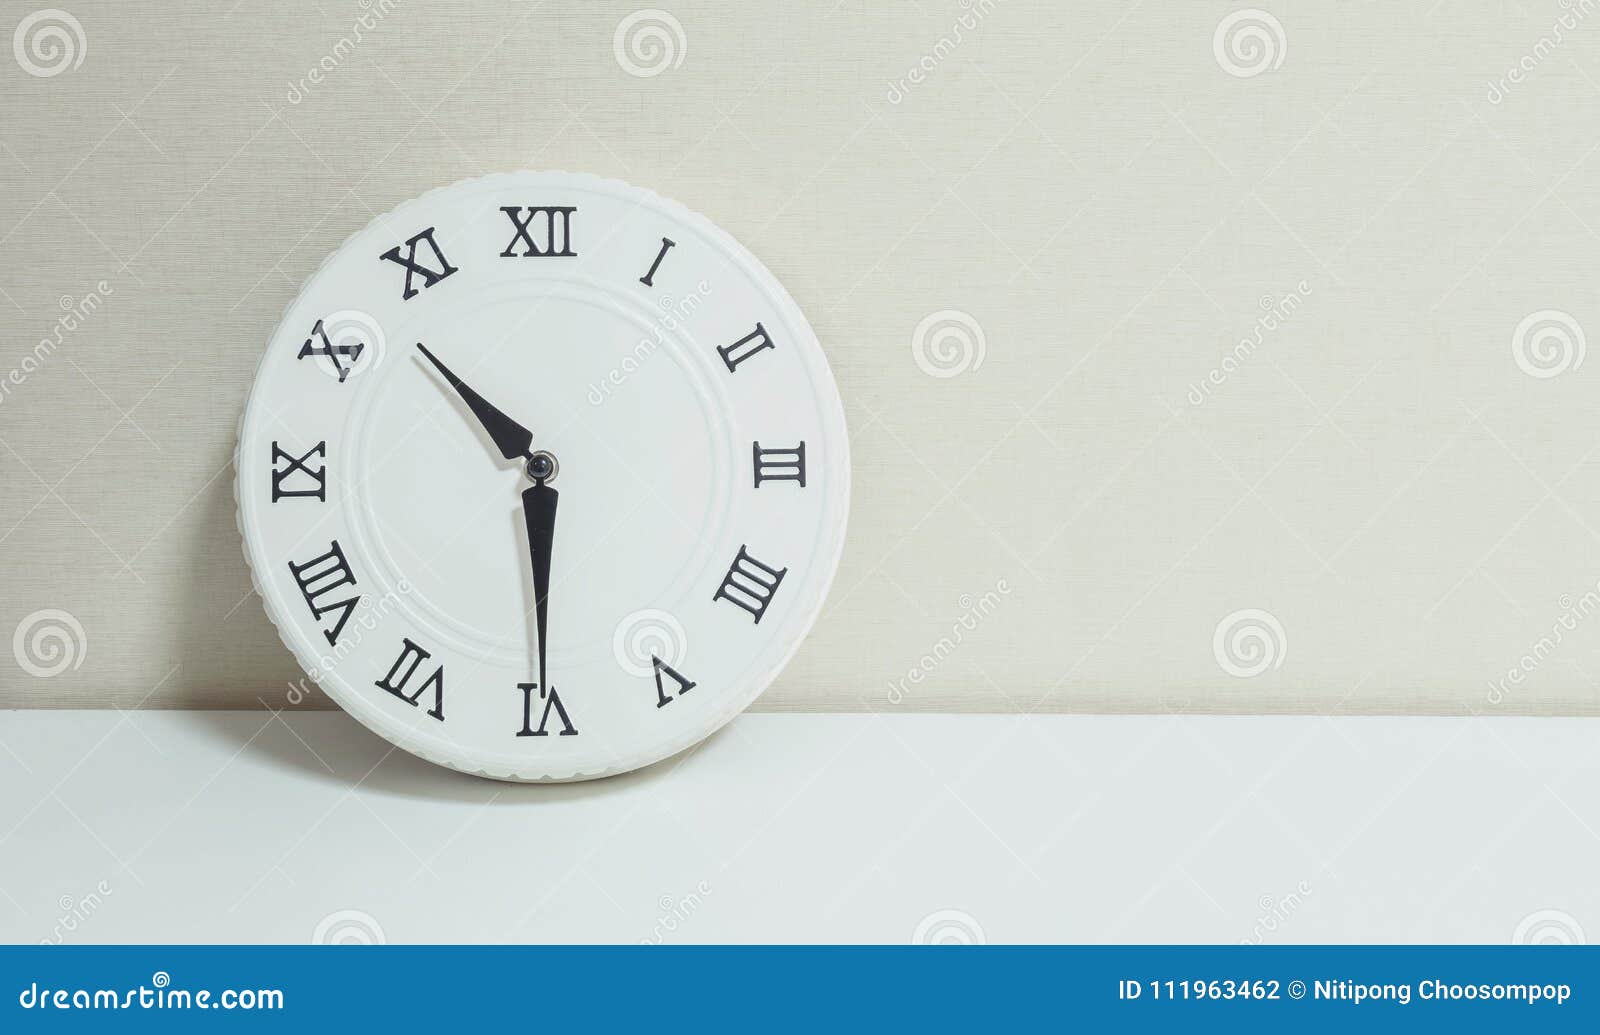 Đồng hồ treo trang trí: Những chiếc đồng hồ treo tường không chỉ đơn thuần là sản phẩm để xem giờ, mà chúng còn là một sản phẩm trang trí tuyệt vời giúp tăng thêm sự sang trọng, tinh tế cho không gian sống của bạn. Hãy cùng đón xem bức ảnh về đồng hồ treo trang trí đẹp đến ngỡ ngàng.